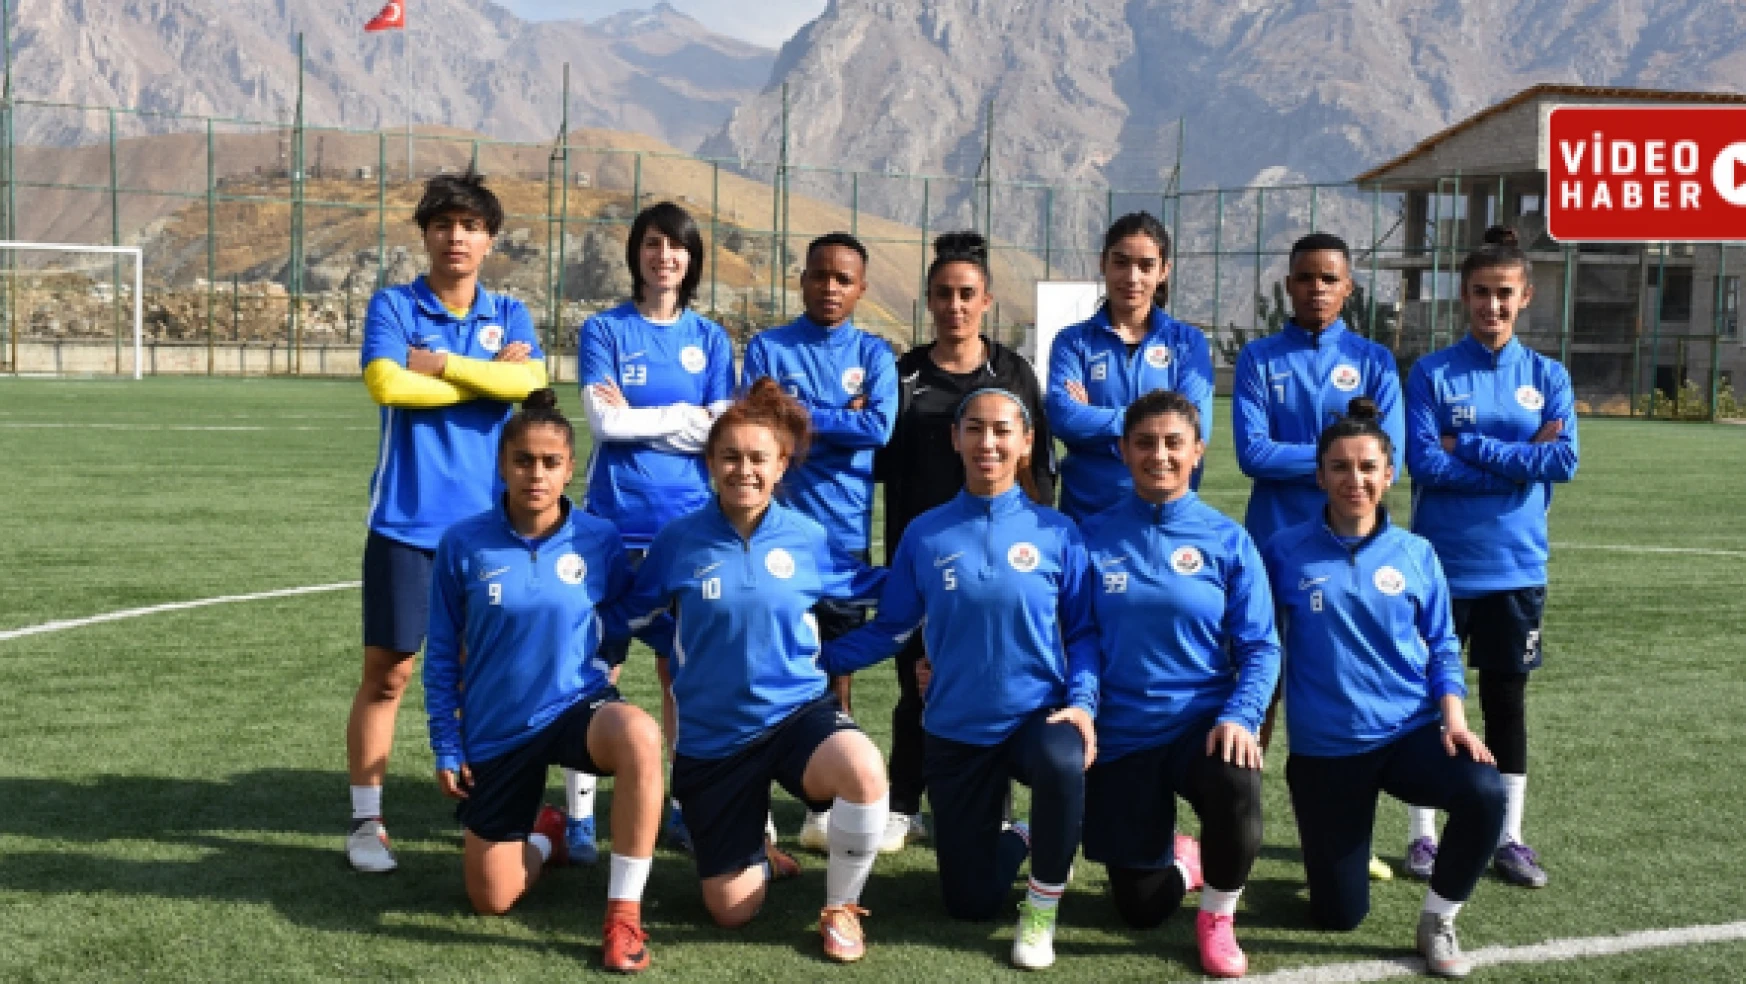 Hakkarigücü Kadın Futbol Takımı küçük kızlara ilham oluyor